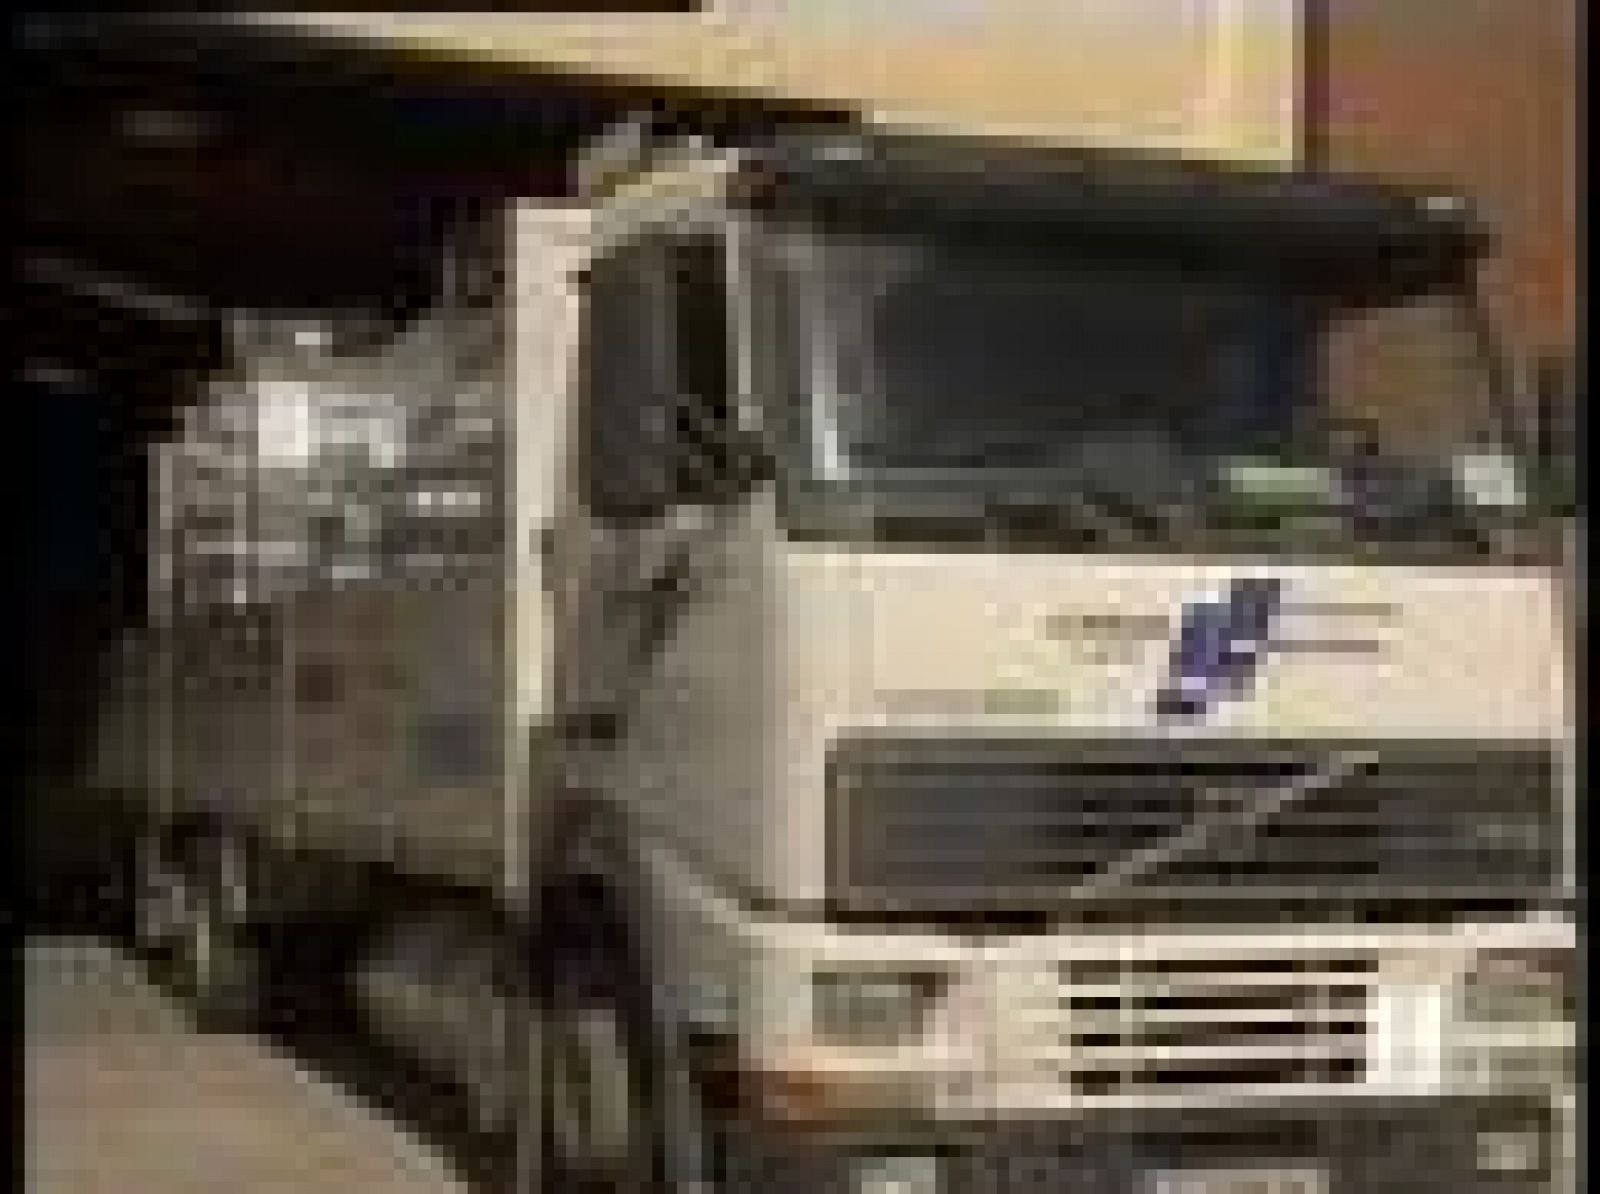 Los transportistas que pertenecen a las asociaciones Fenadismer, Antid y Cofedetrans han anunciado la suspensión temporal del paro del sector que habían convocado de forma indefinida a partir del pasado 9 de junio.